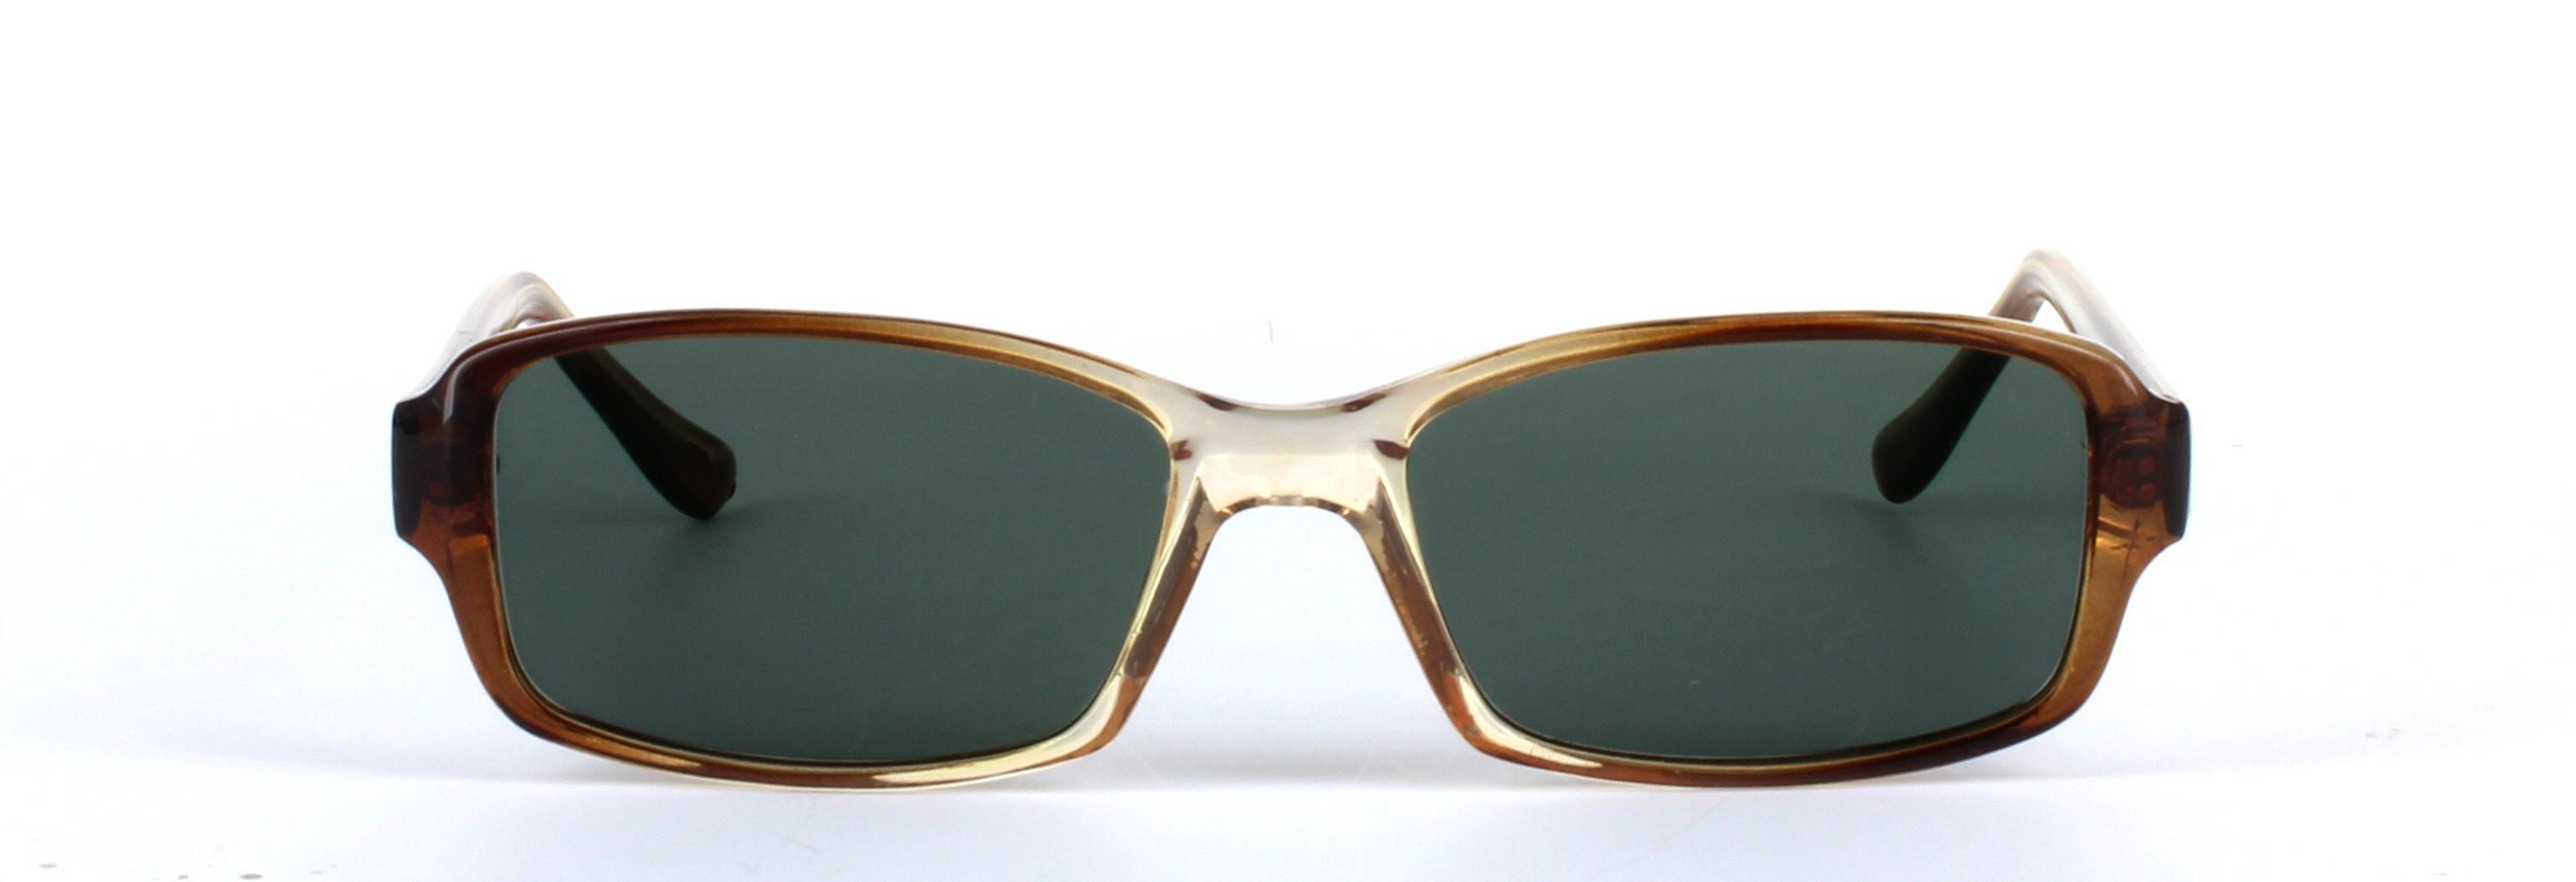 Chico Brown Full Rim Rectangular Plastic Sunglasses - Image View 5